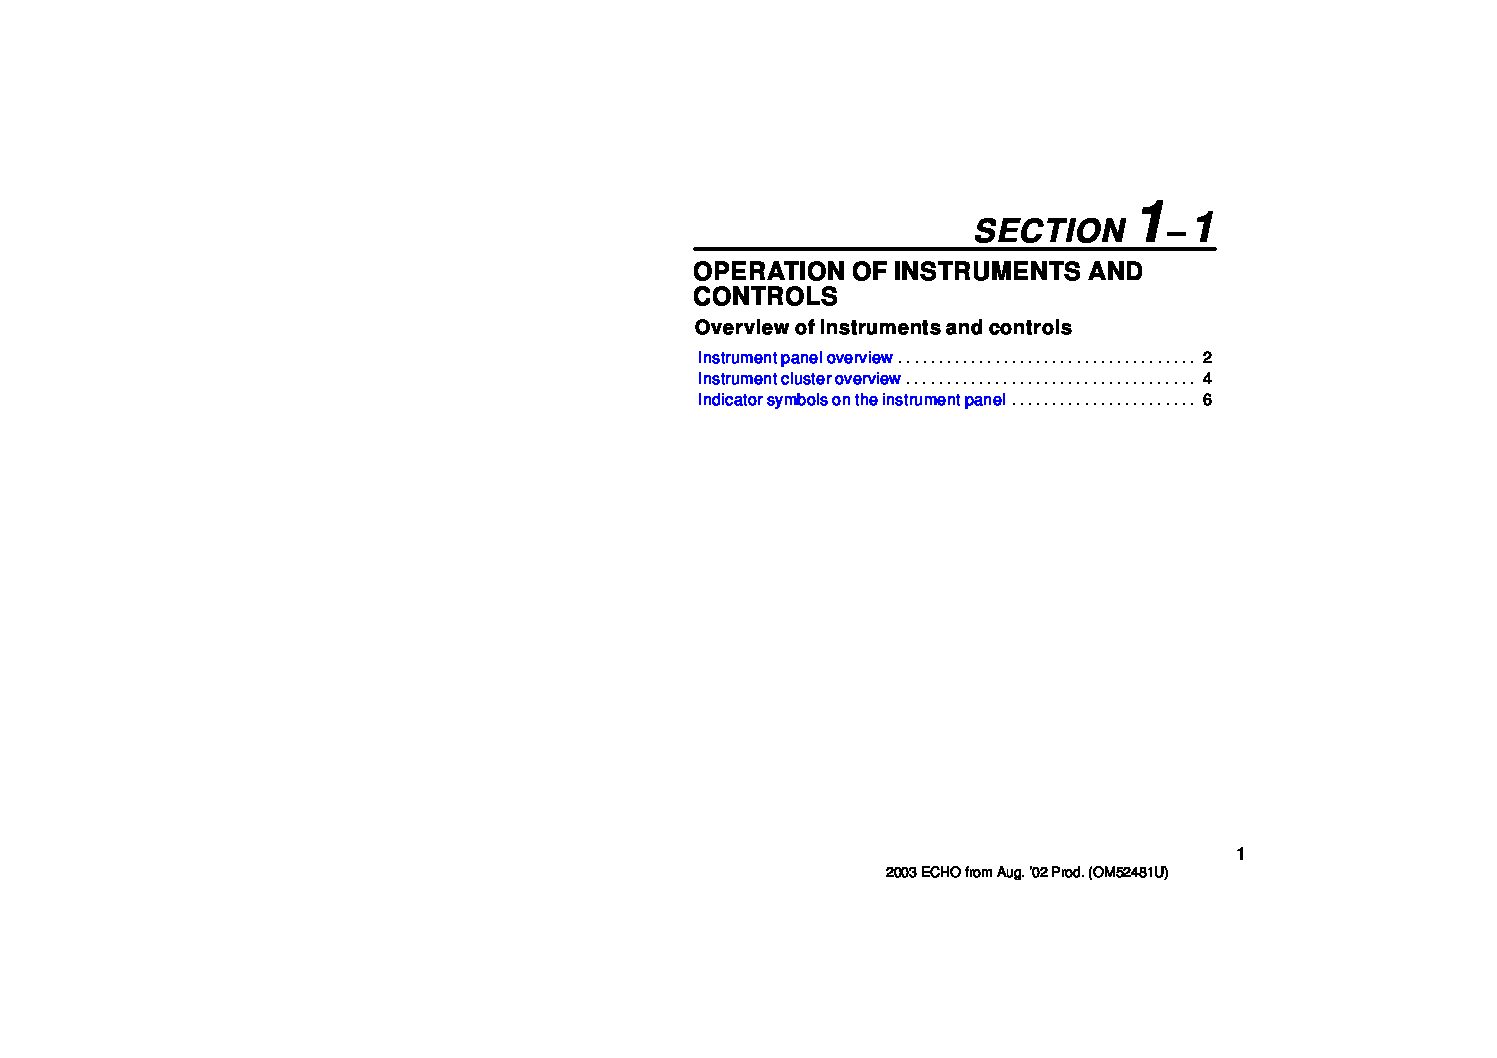 toyota echo repair manual pdf